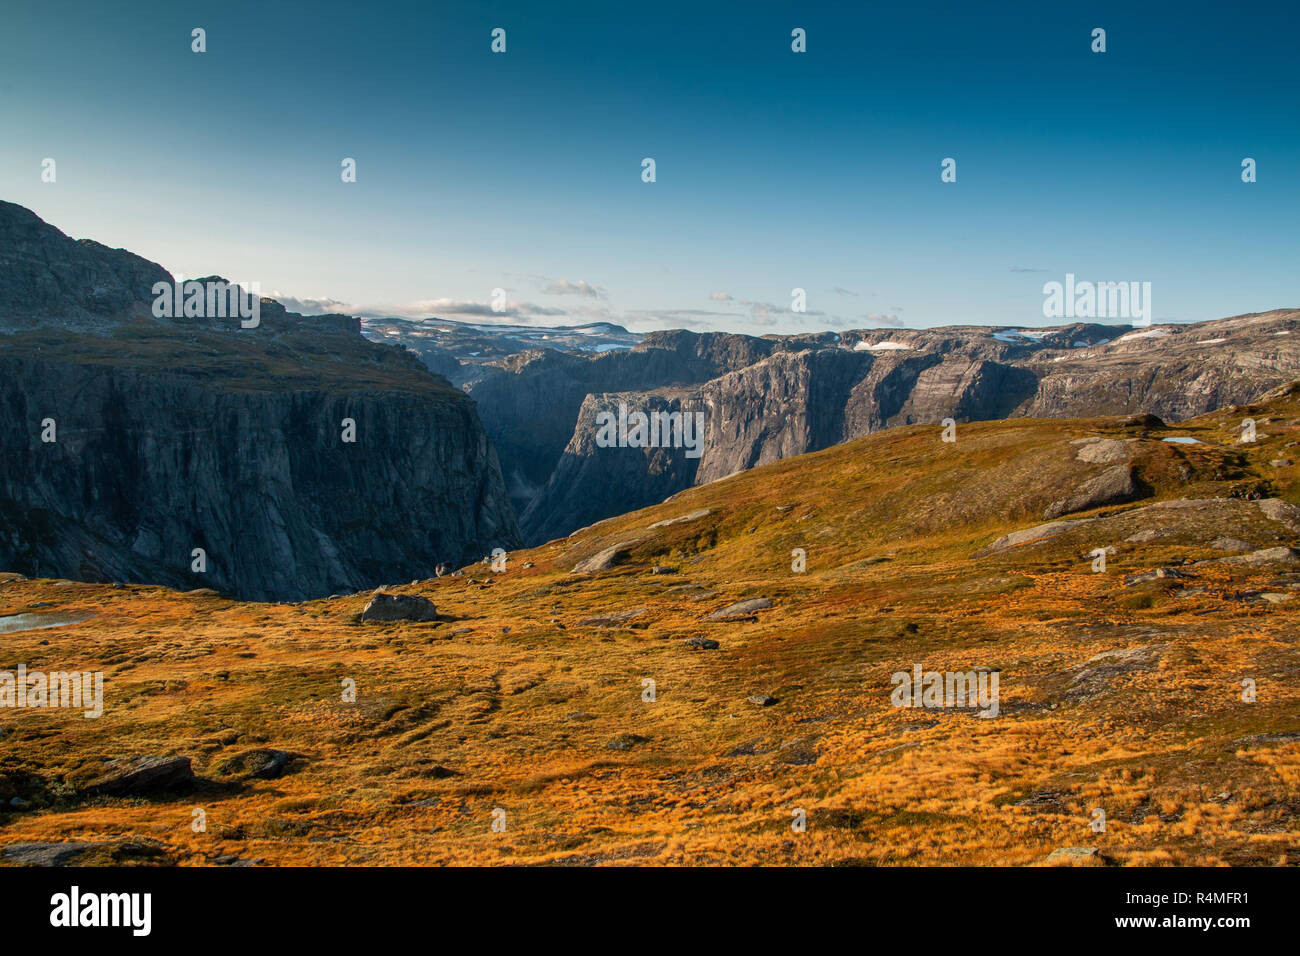 Incroyable de montagnes norvégiennes Banque D'Images